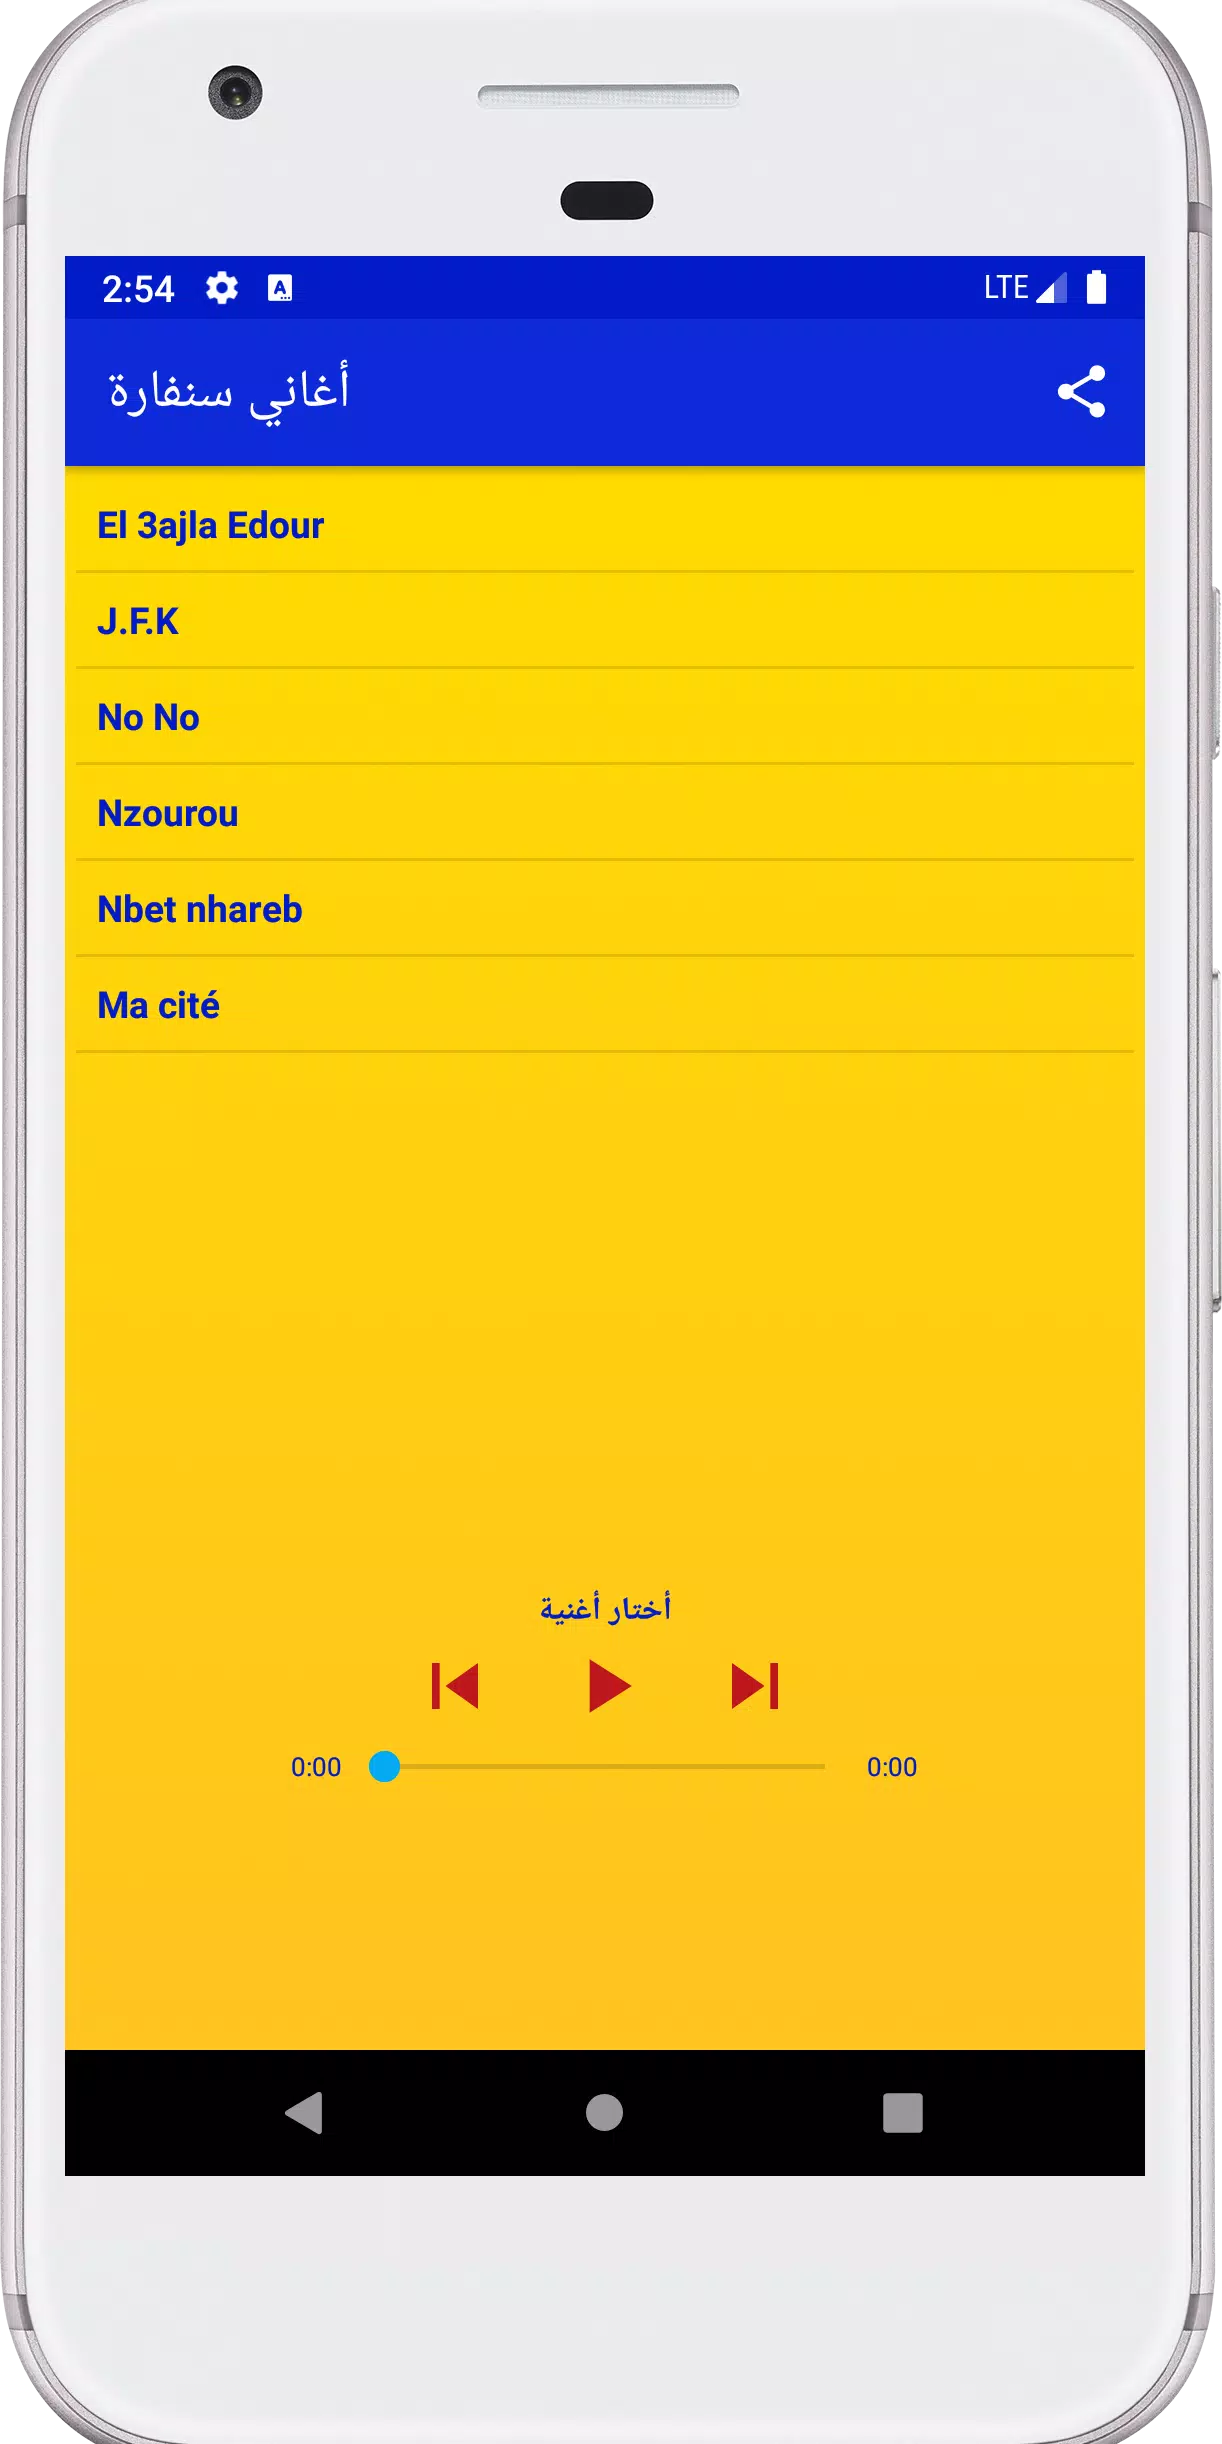 Musique Sanfara 🎵 Plus popula APK pour Android Télécharger